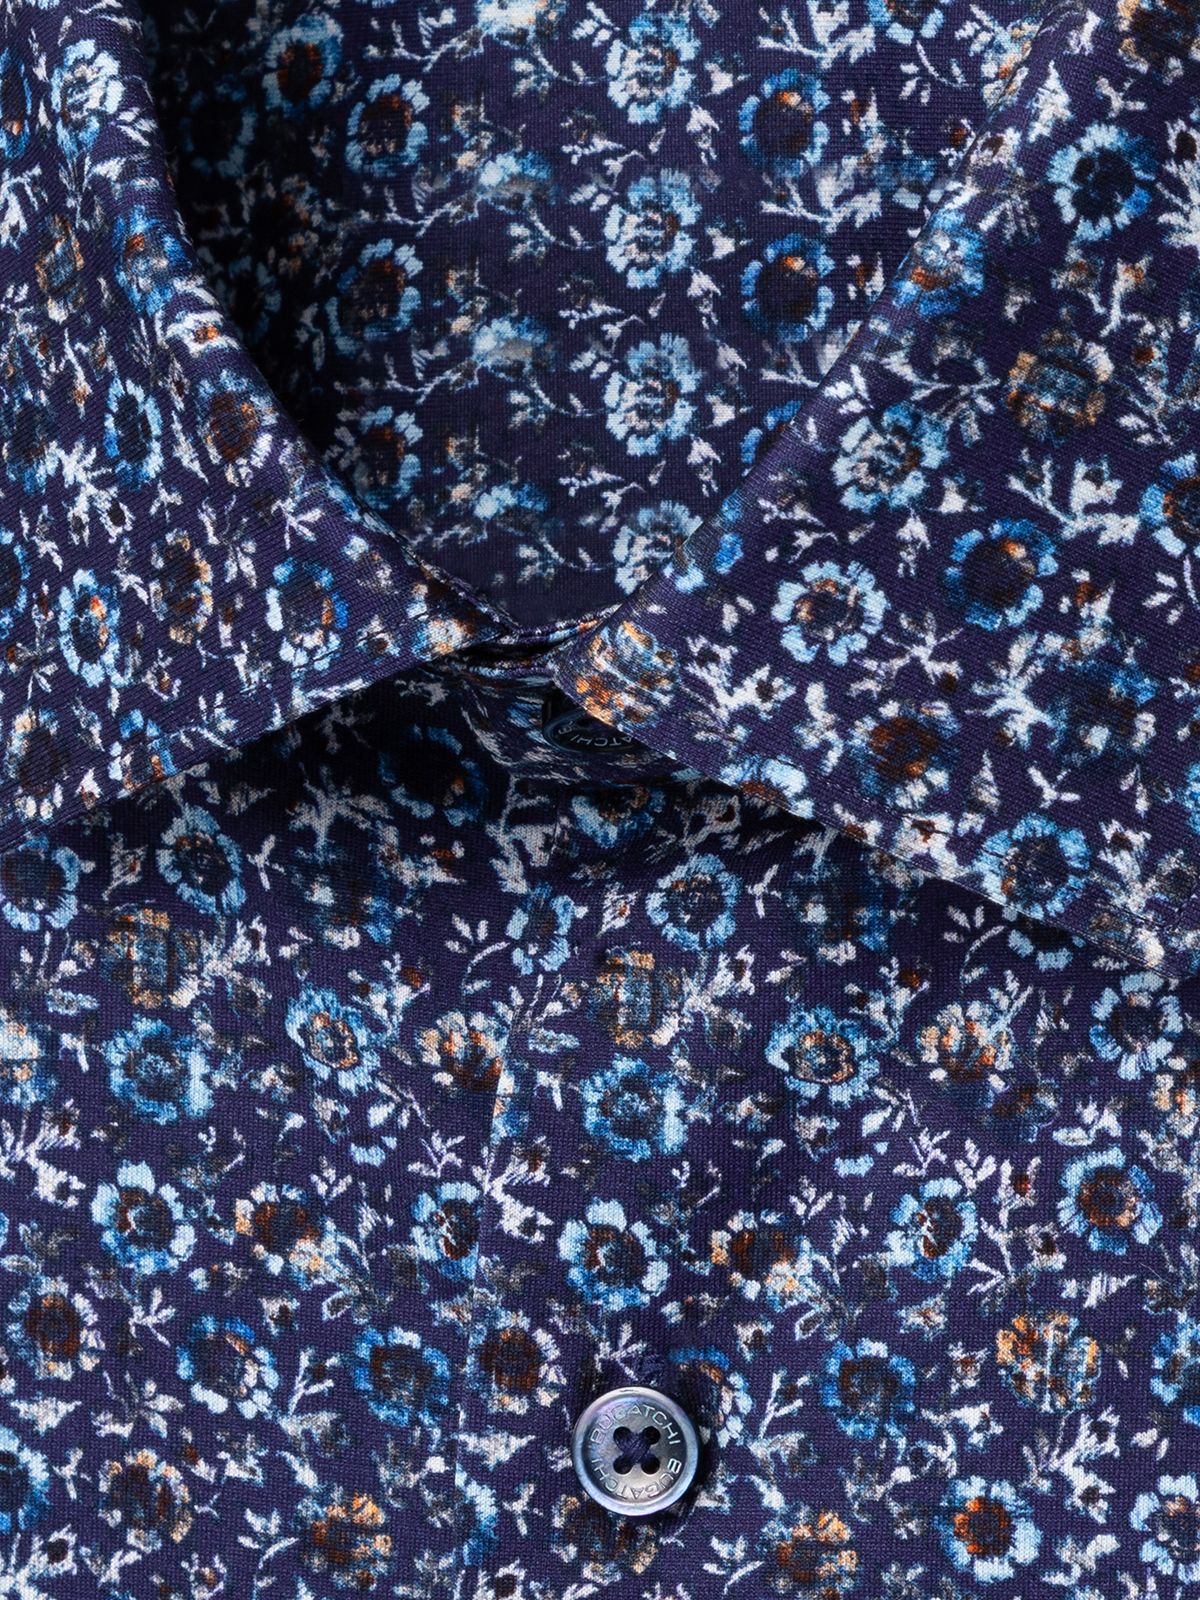 OoohCotton Tech Long Sleeve Shirt - Night Blue Floral